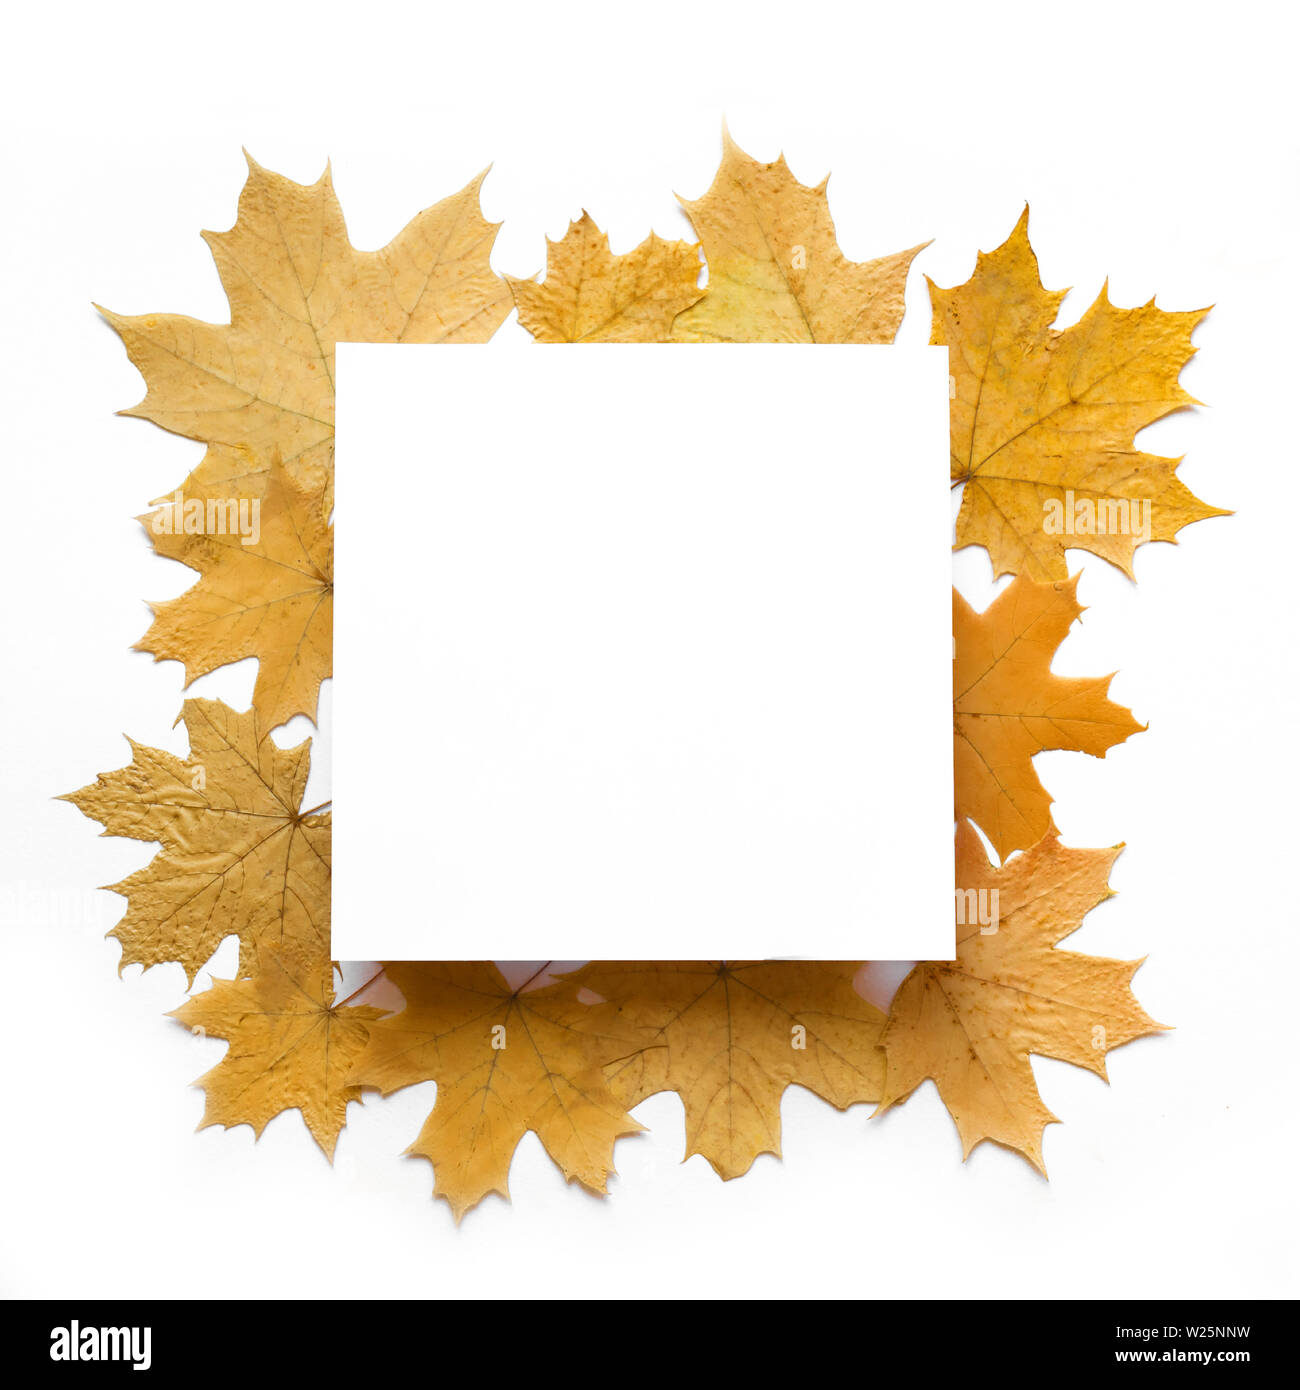 Gelbe ahorn Blätter flach, quadratisch kopieren. Herbstliche gelbe Blätter auf weißem Hintergrund, kreative saisonale Layout, Herbst Konzept. Stockfoto